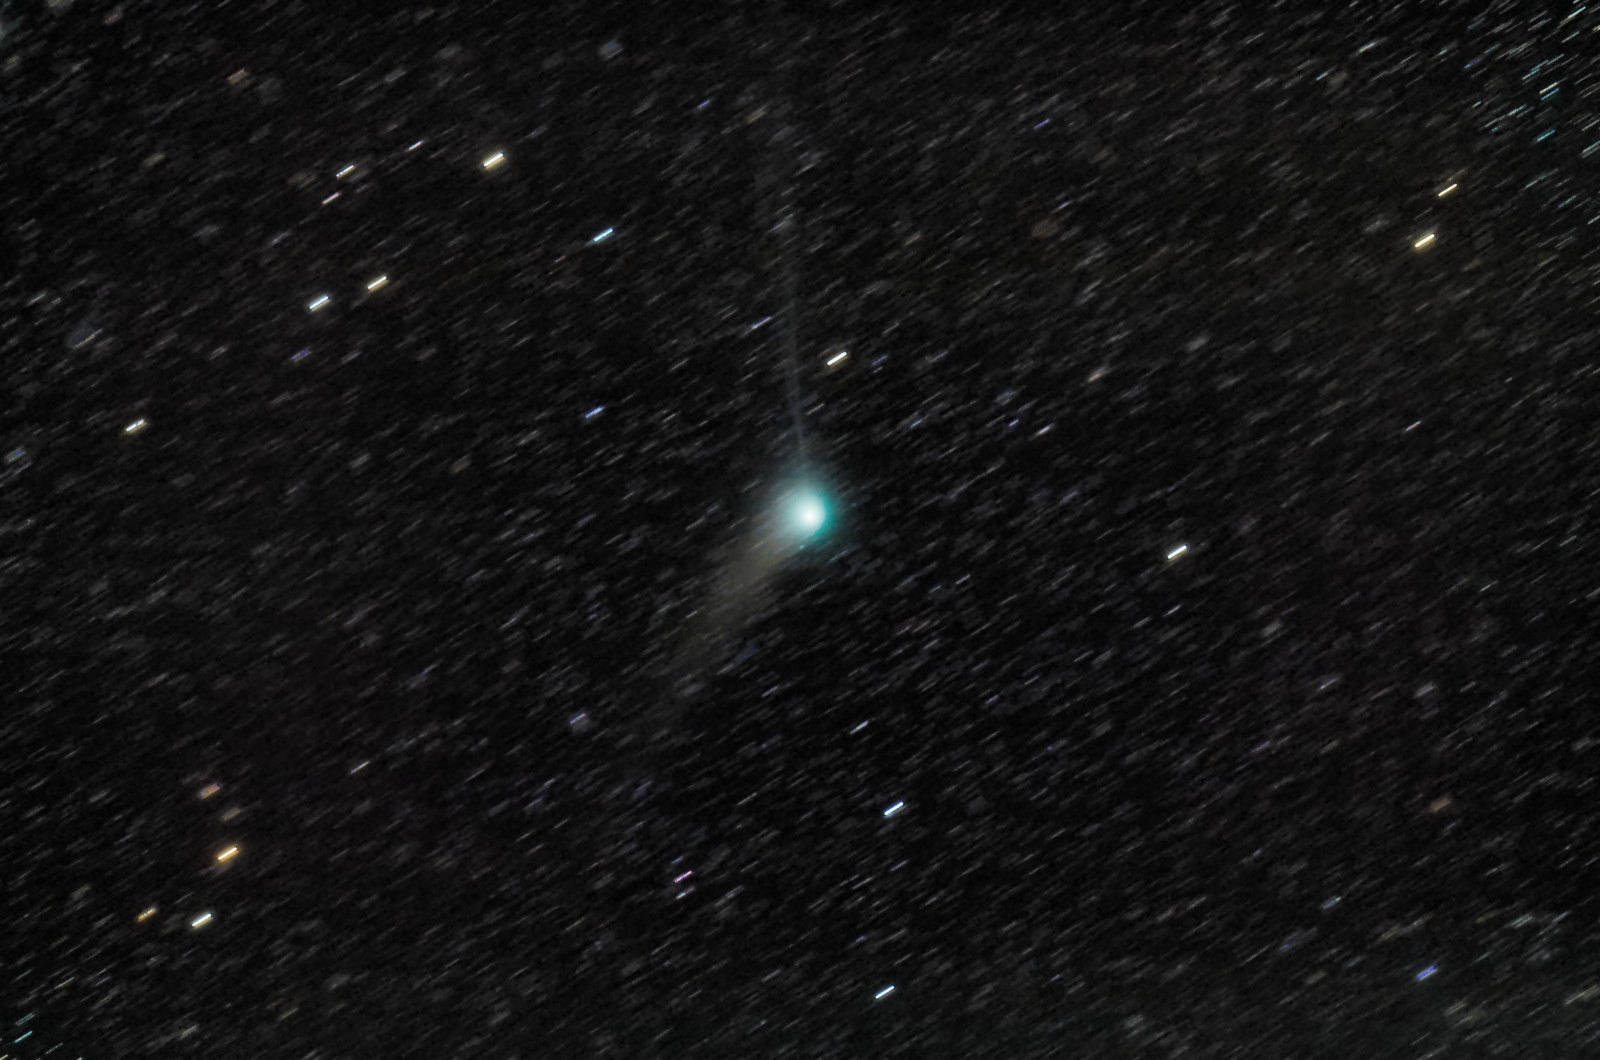 Comet K1 PanSTARRS